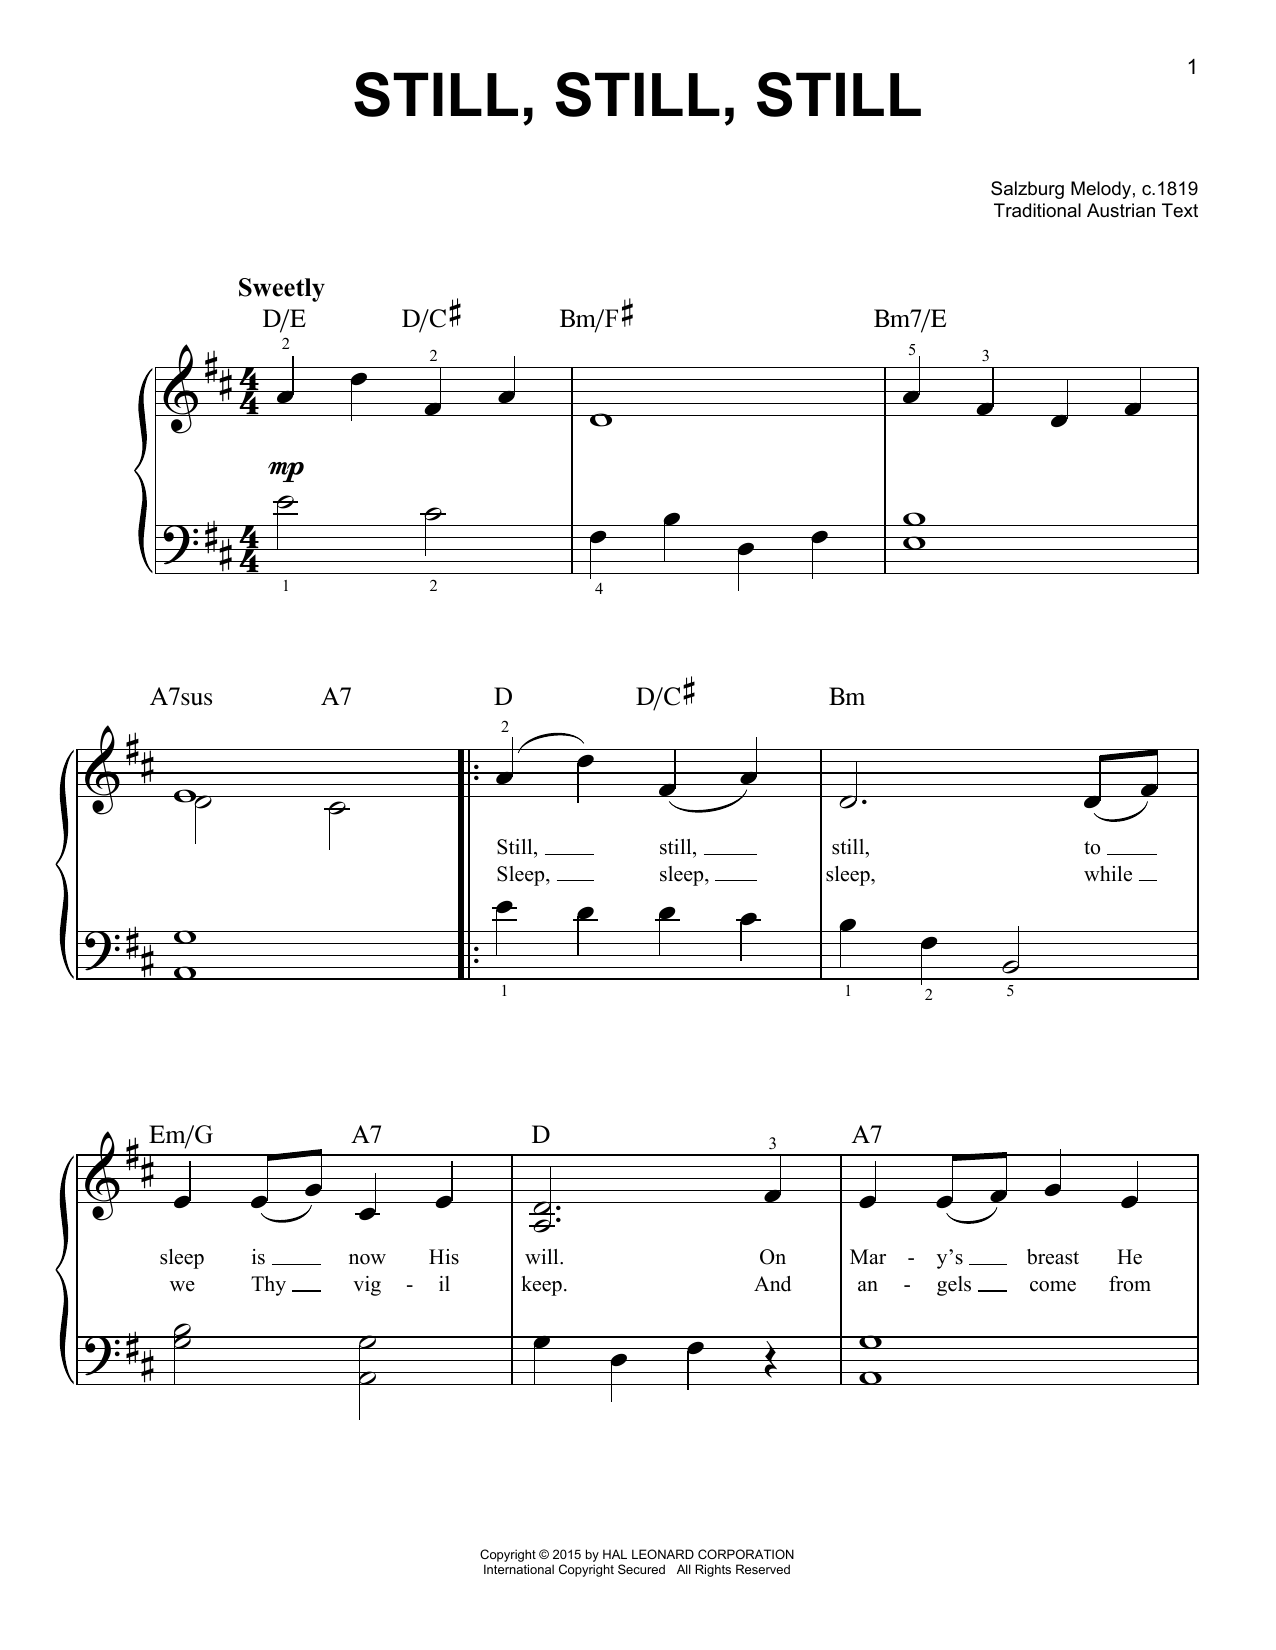 Salzburg Melody, c.1819 Still, Still, Still sheet music notes and chords arranged for Violin Duet